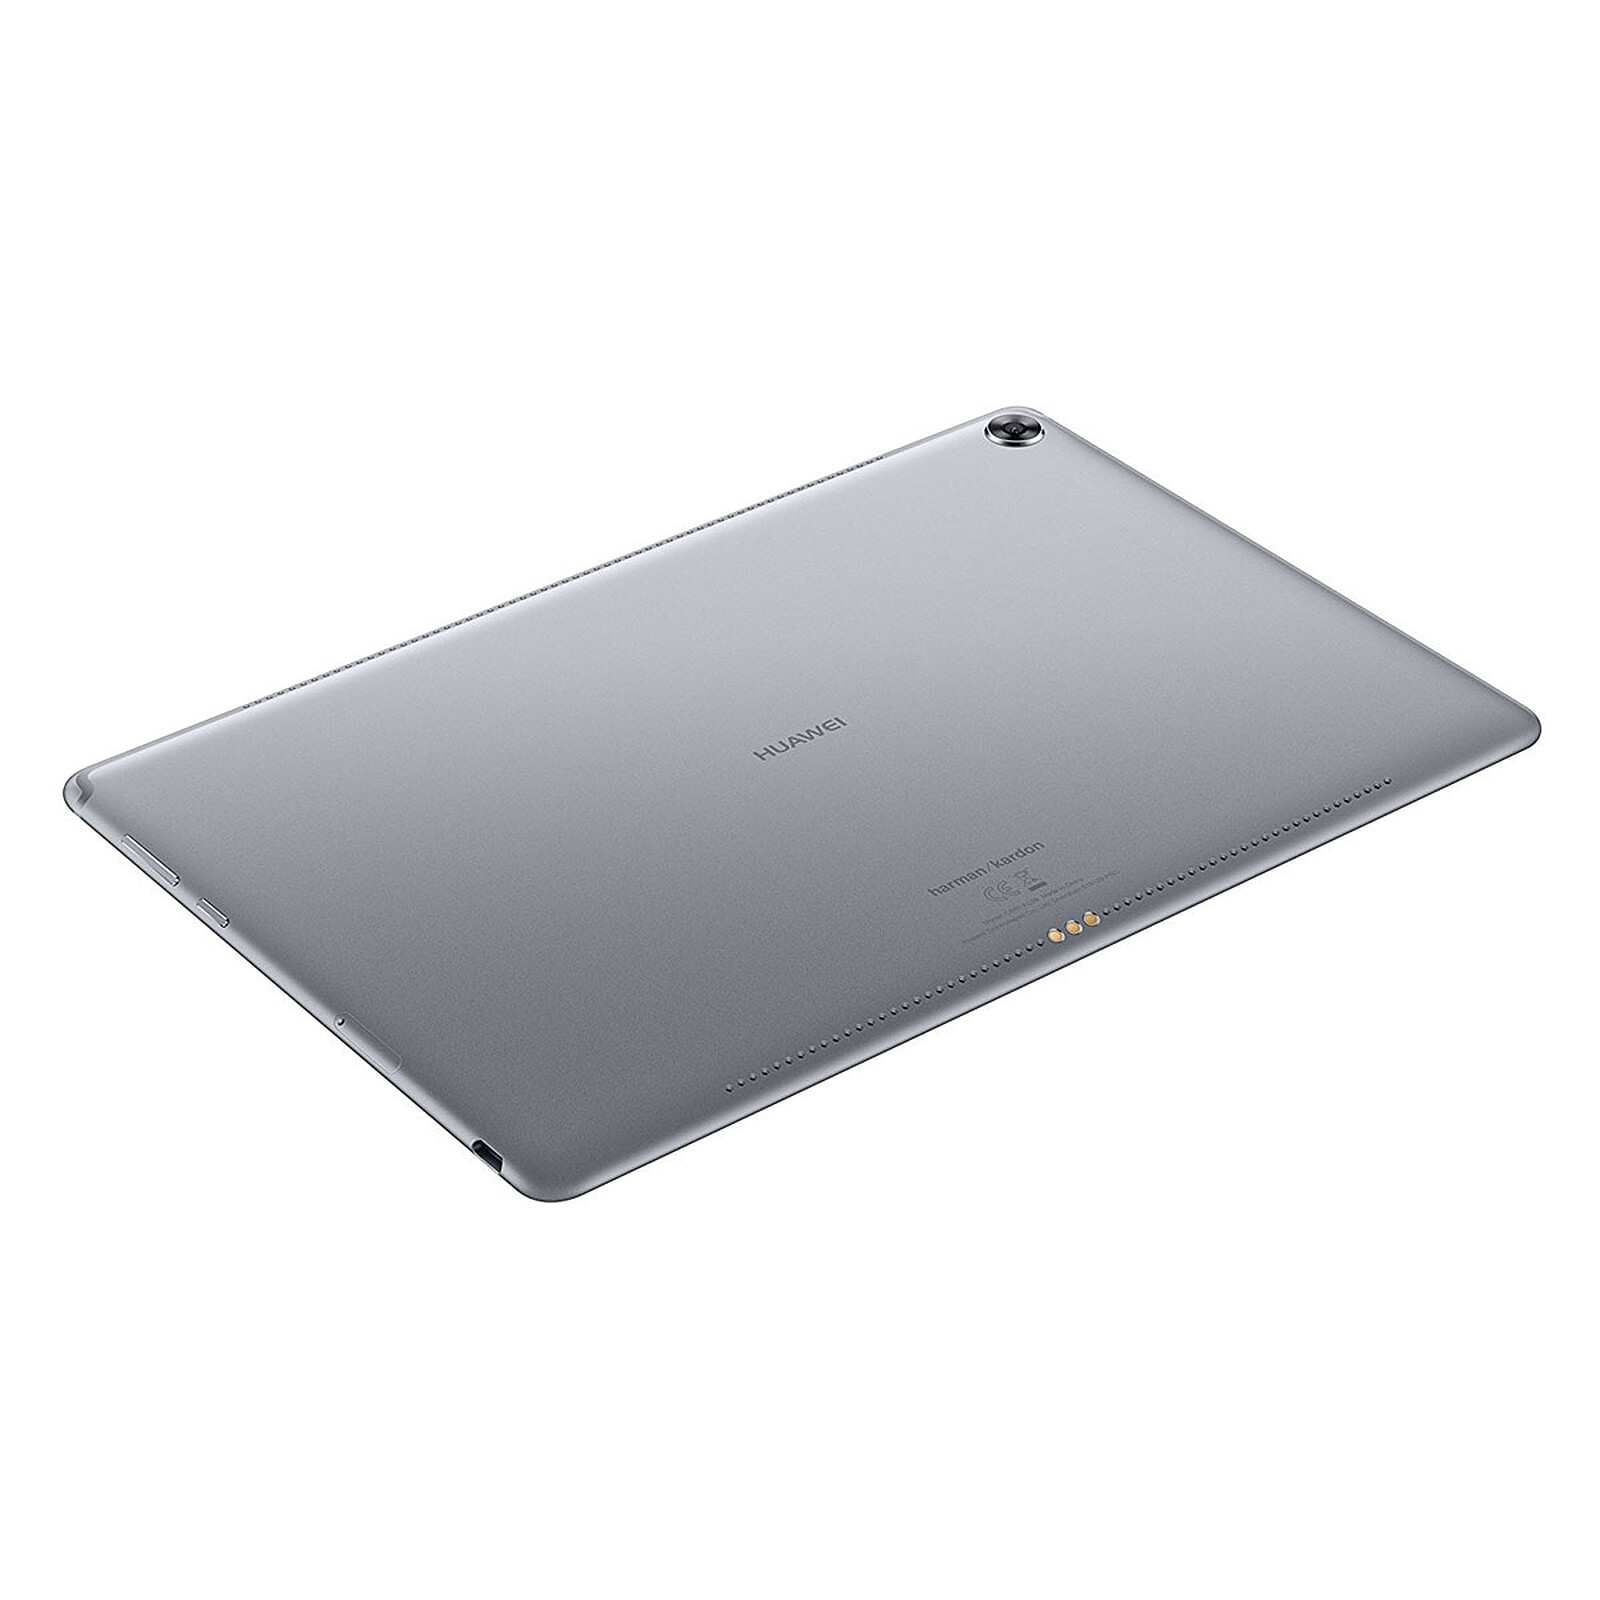 Nueva Huawei MediaPad 10.8, características, precio, especificaciones